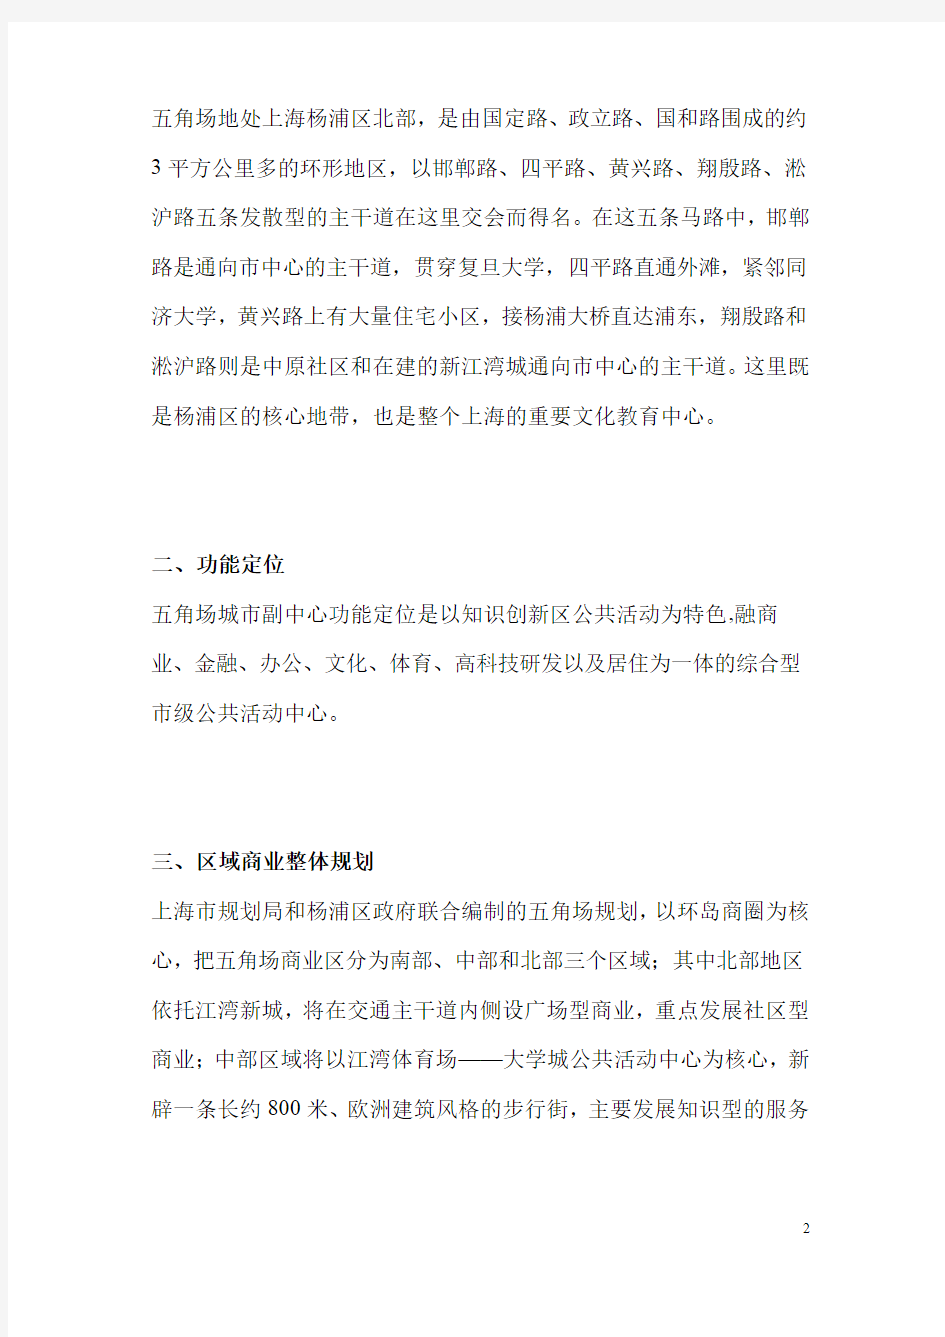 上海五角场商业项目定位